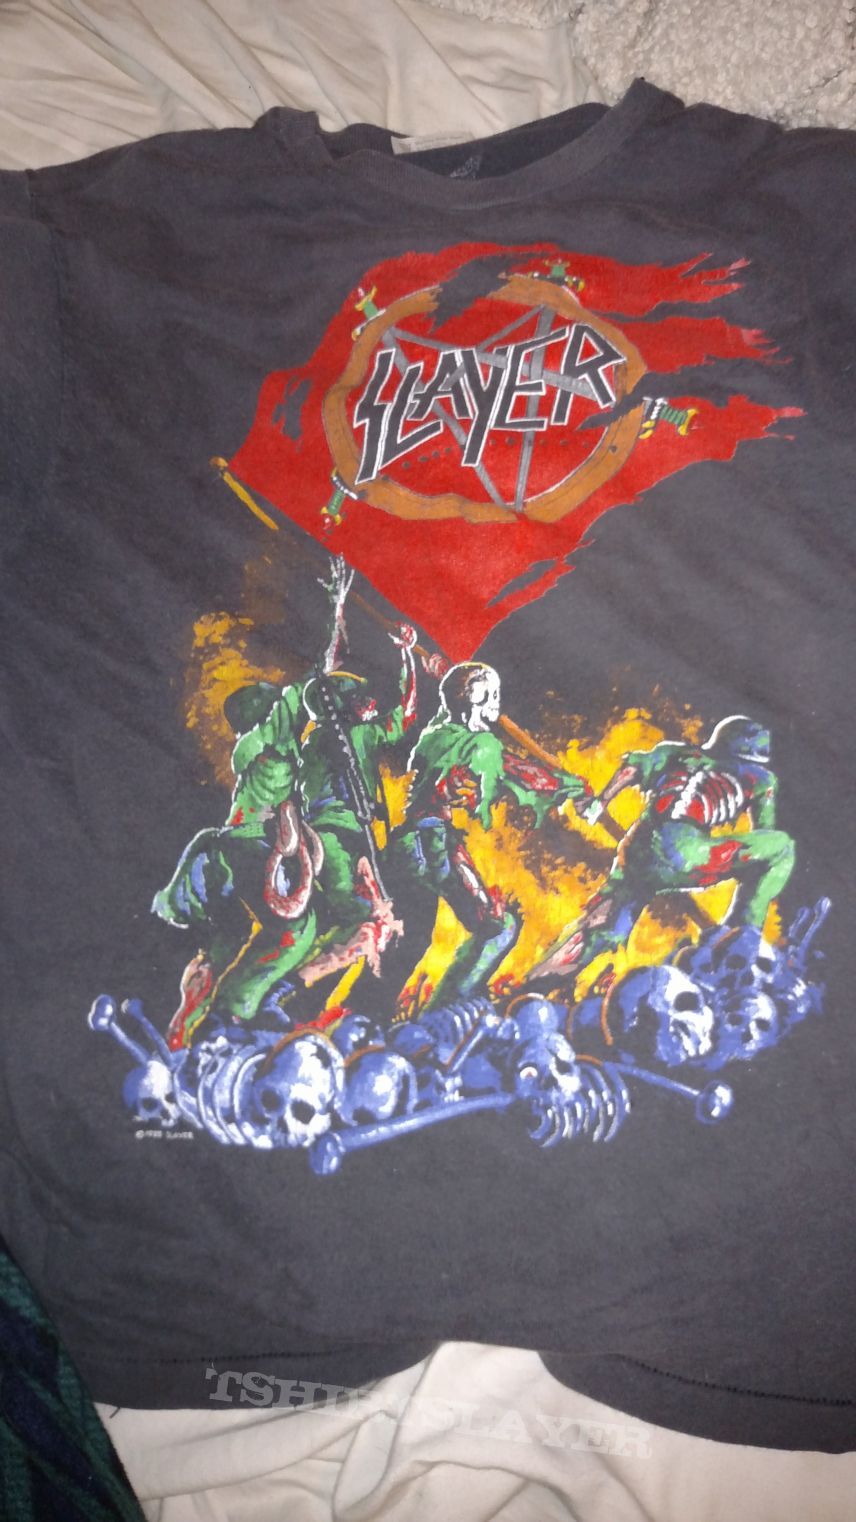 Slayer - World Sacrifice 89